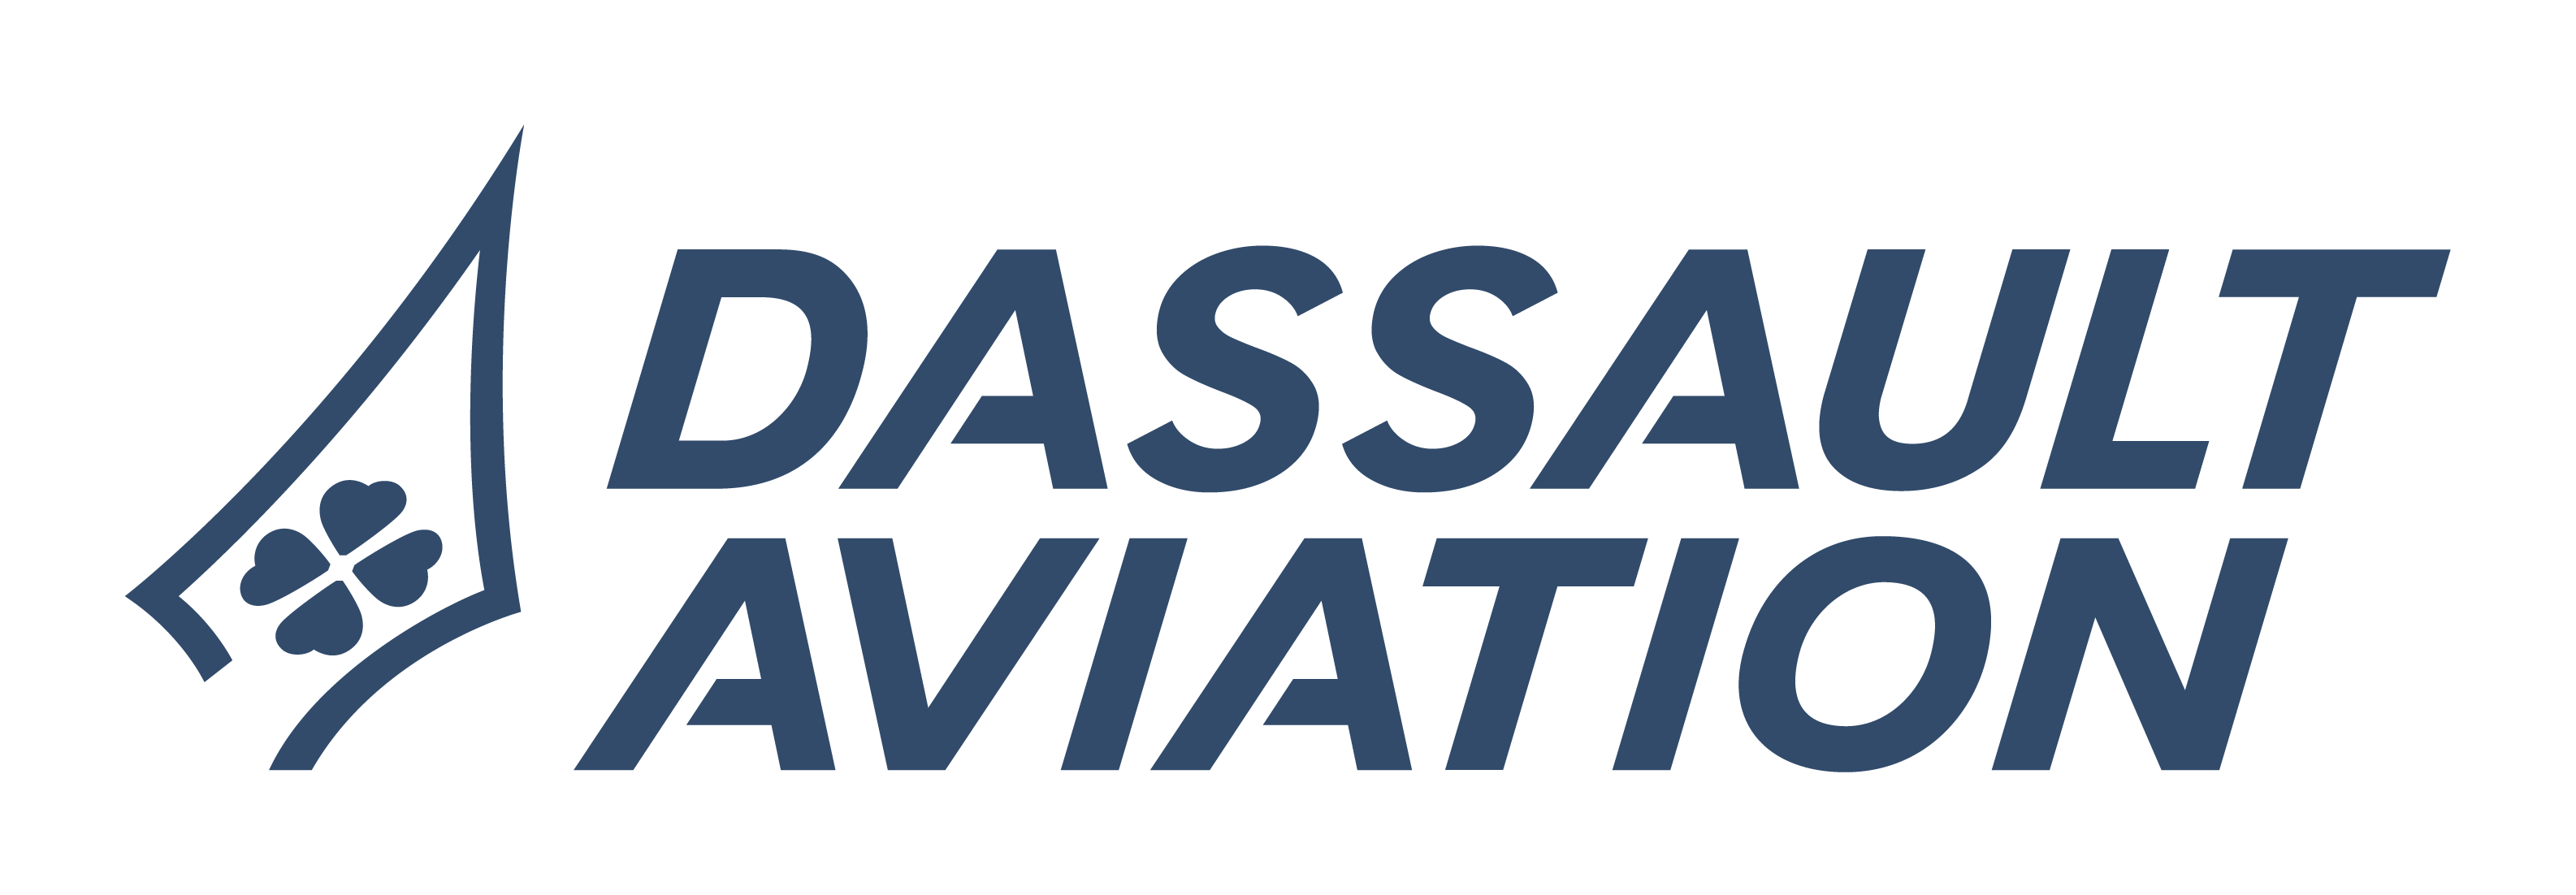 Dassault Aviation Confirm Platinum Sponsorship for EDEX 2021